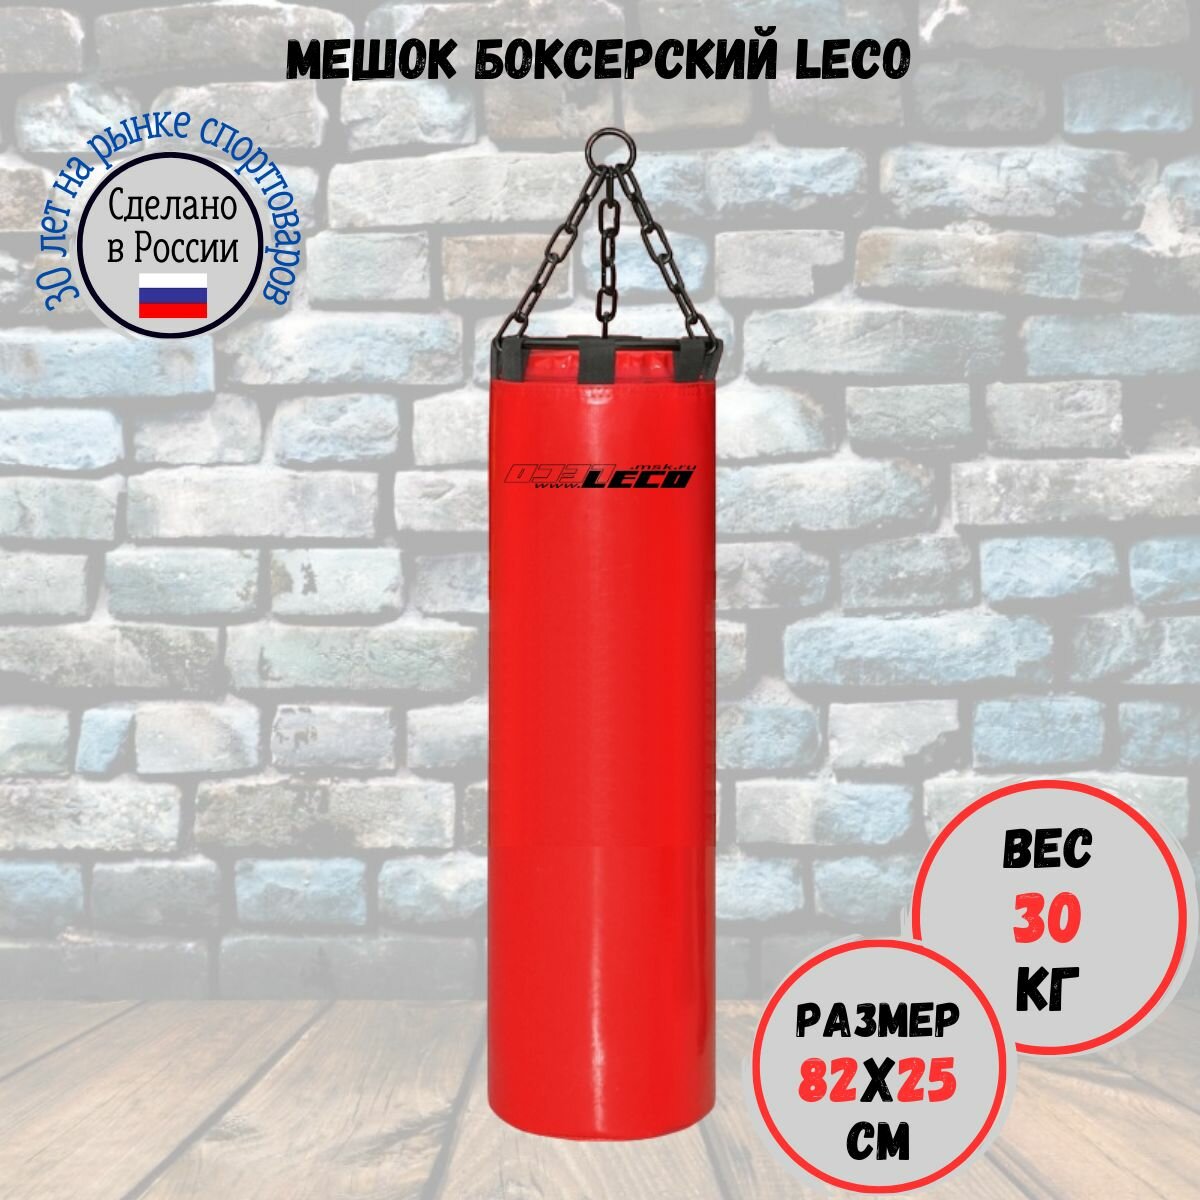 Мешок боксерский 30 кг про, LECO, красный